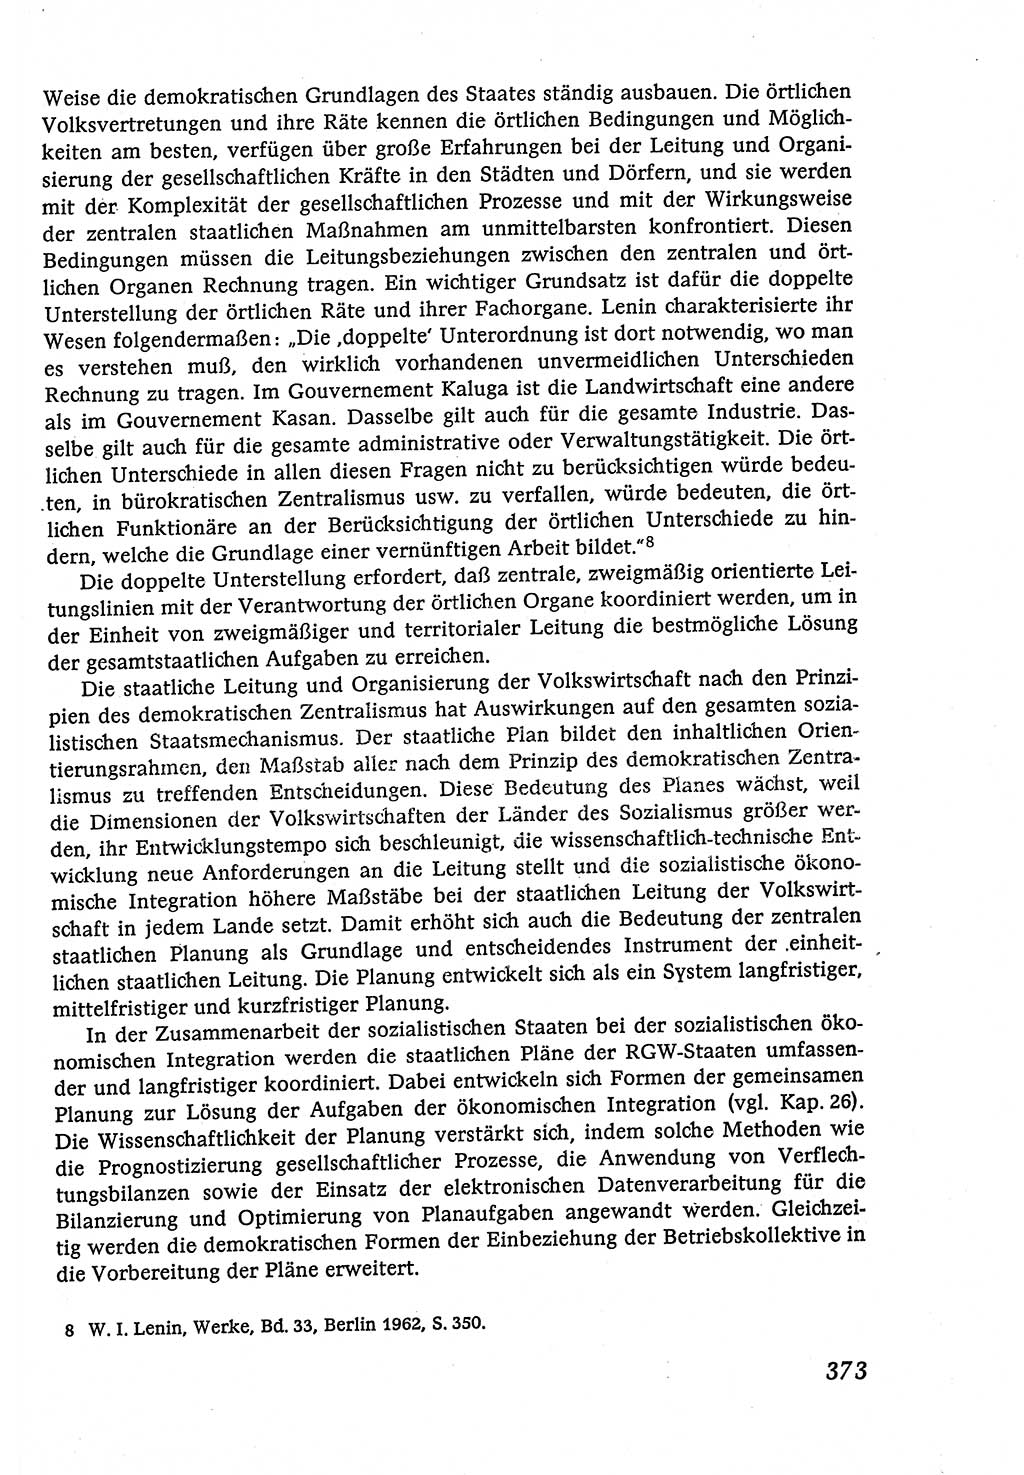 Marxistisch-leninistische (ML) Staats- und Rechtstheorie [Deutsche Demokratische Republik (DDR)], Lehrbuch 1980, Seite 373 (ML St.-R.-Th. DDR Lb. 1980, S. 373)